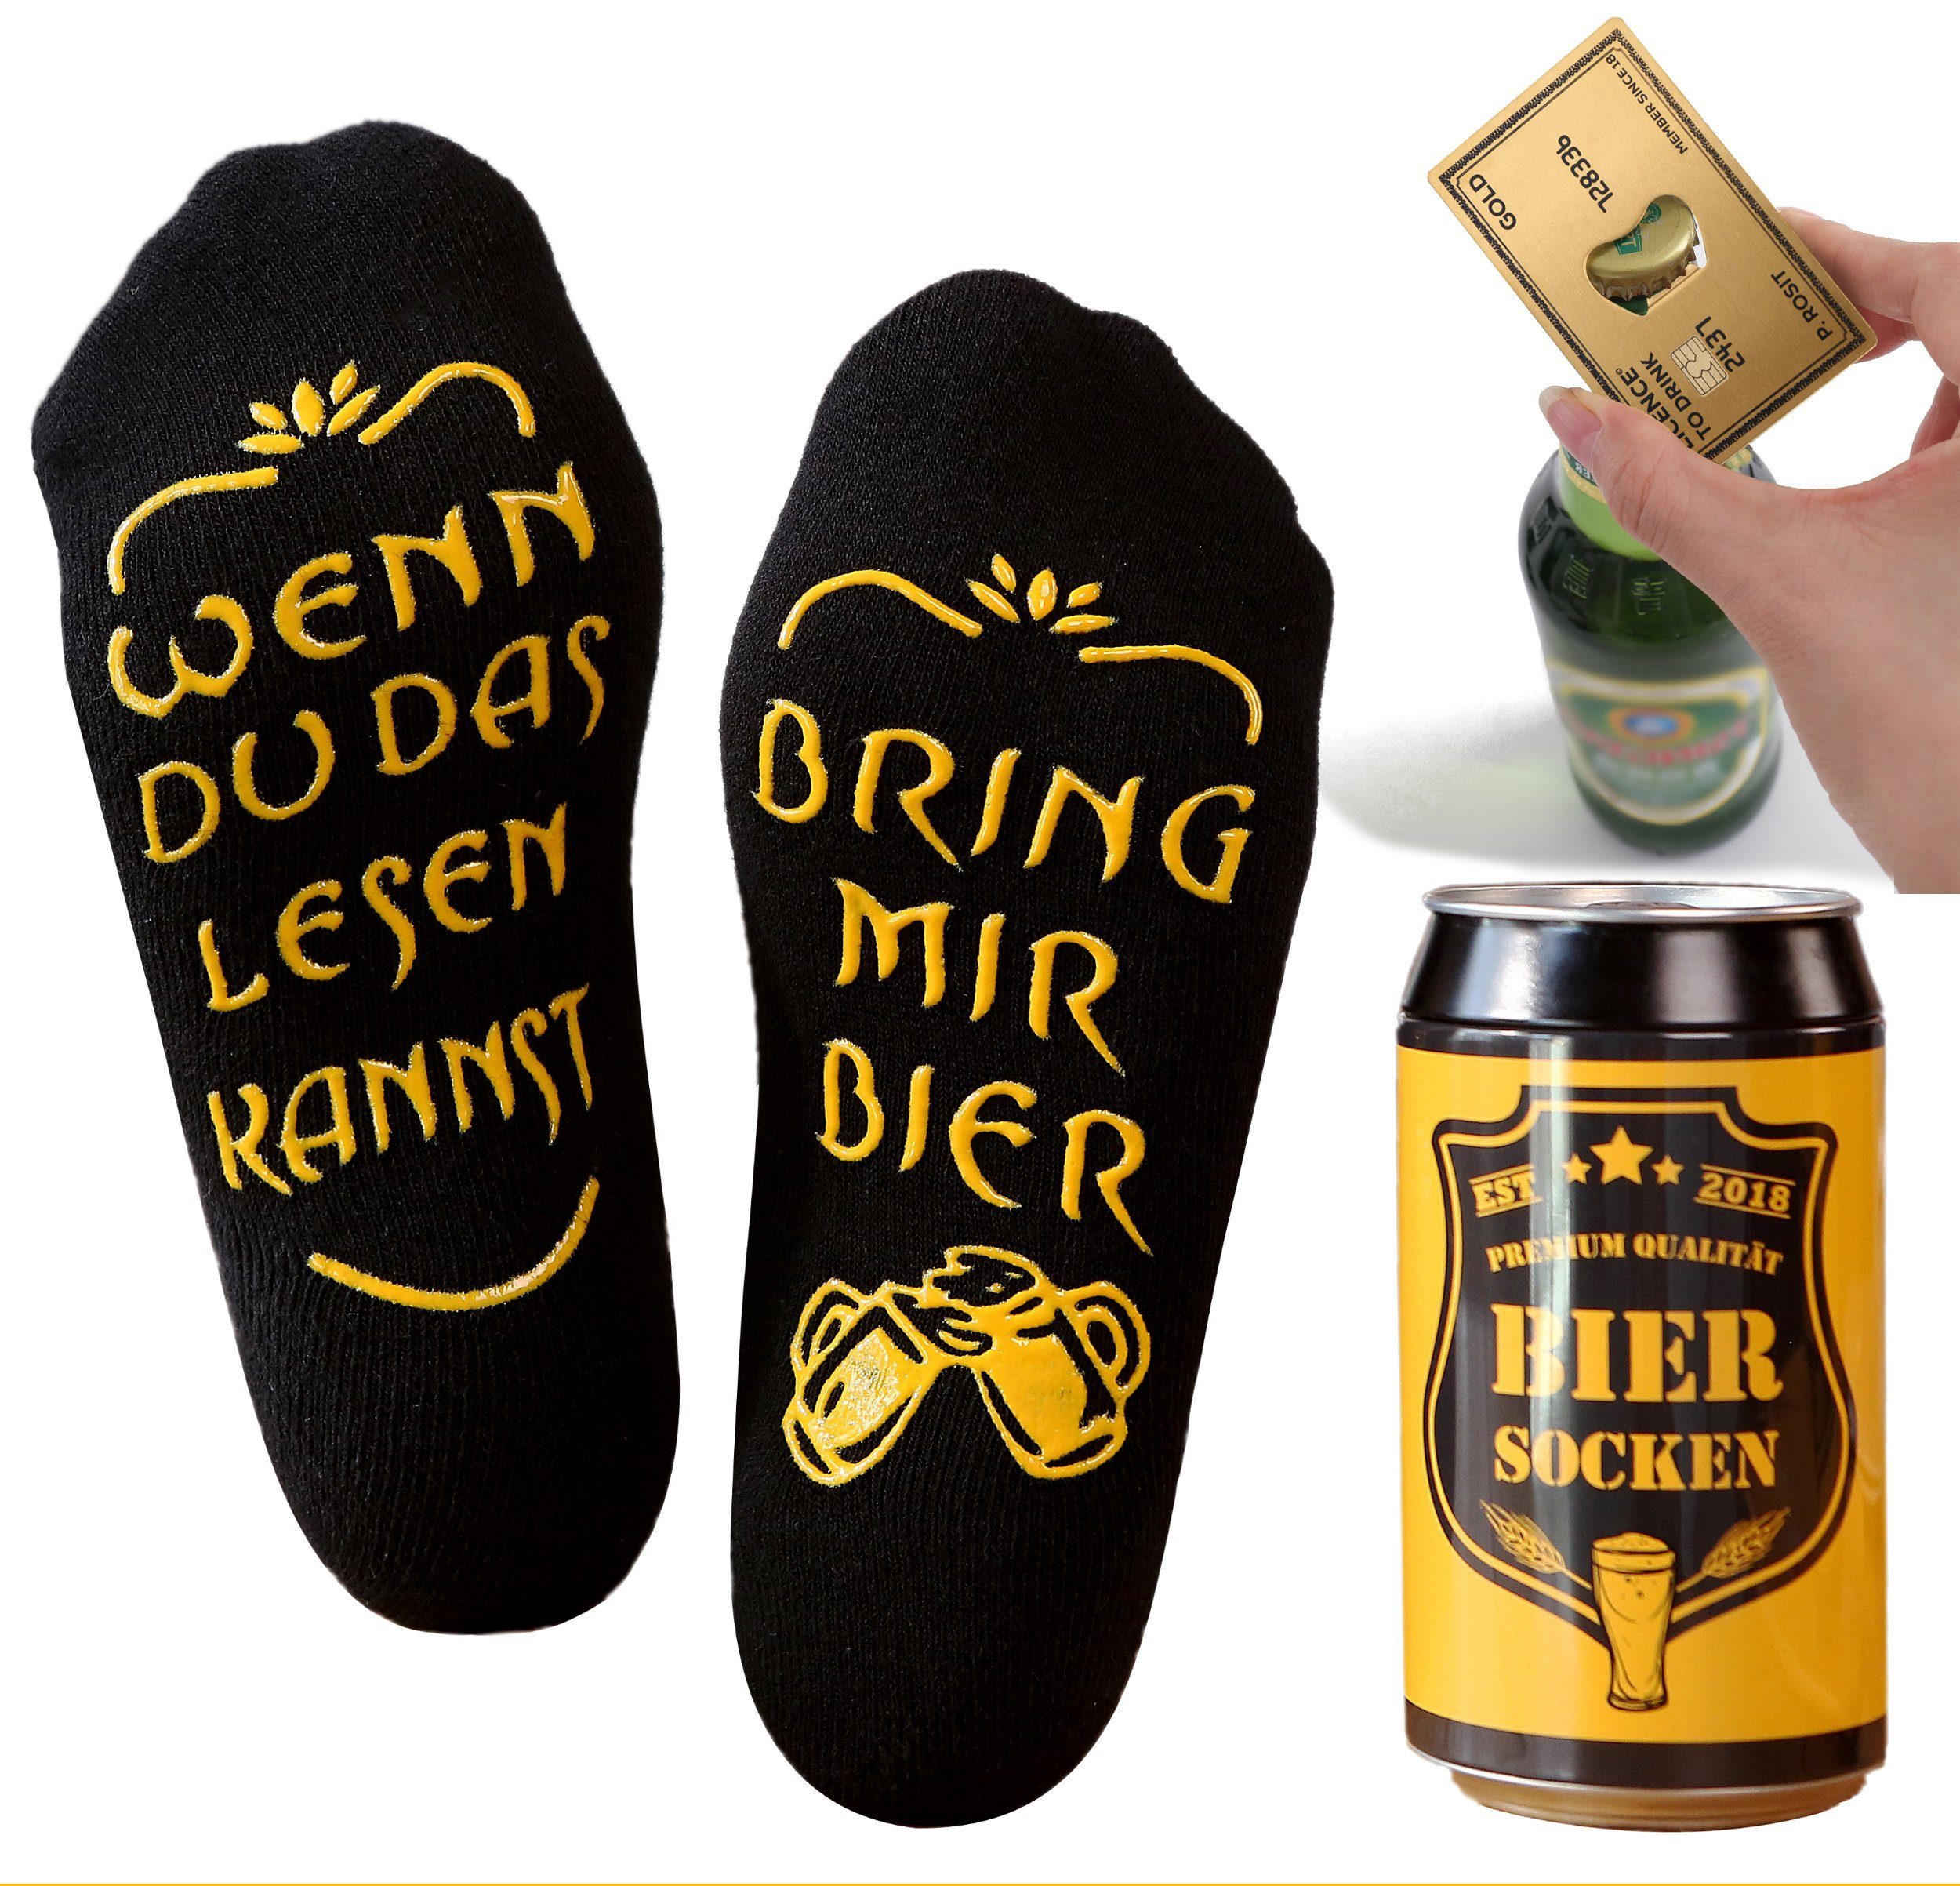 Lucadeau Freizeitsocken mit Spruch und Edelstahl Flaschenöffner, bring mir Bier Socken, (1 Paar) rutschfest, Gr. 38-44, Geschenke für Männer, Geburtstagsgeschenk Gold